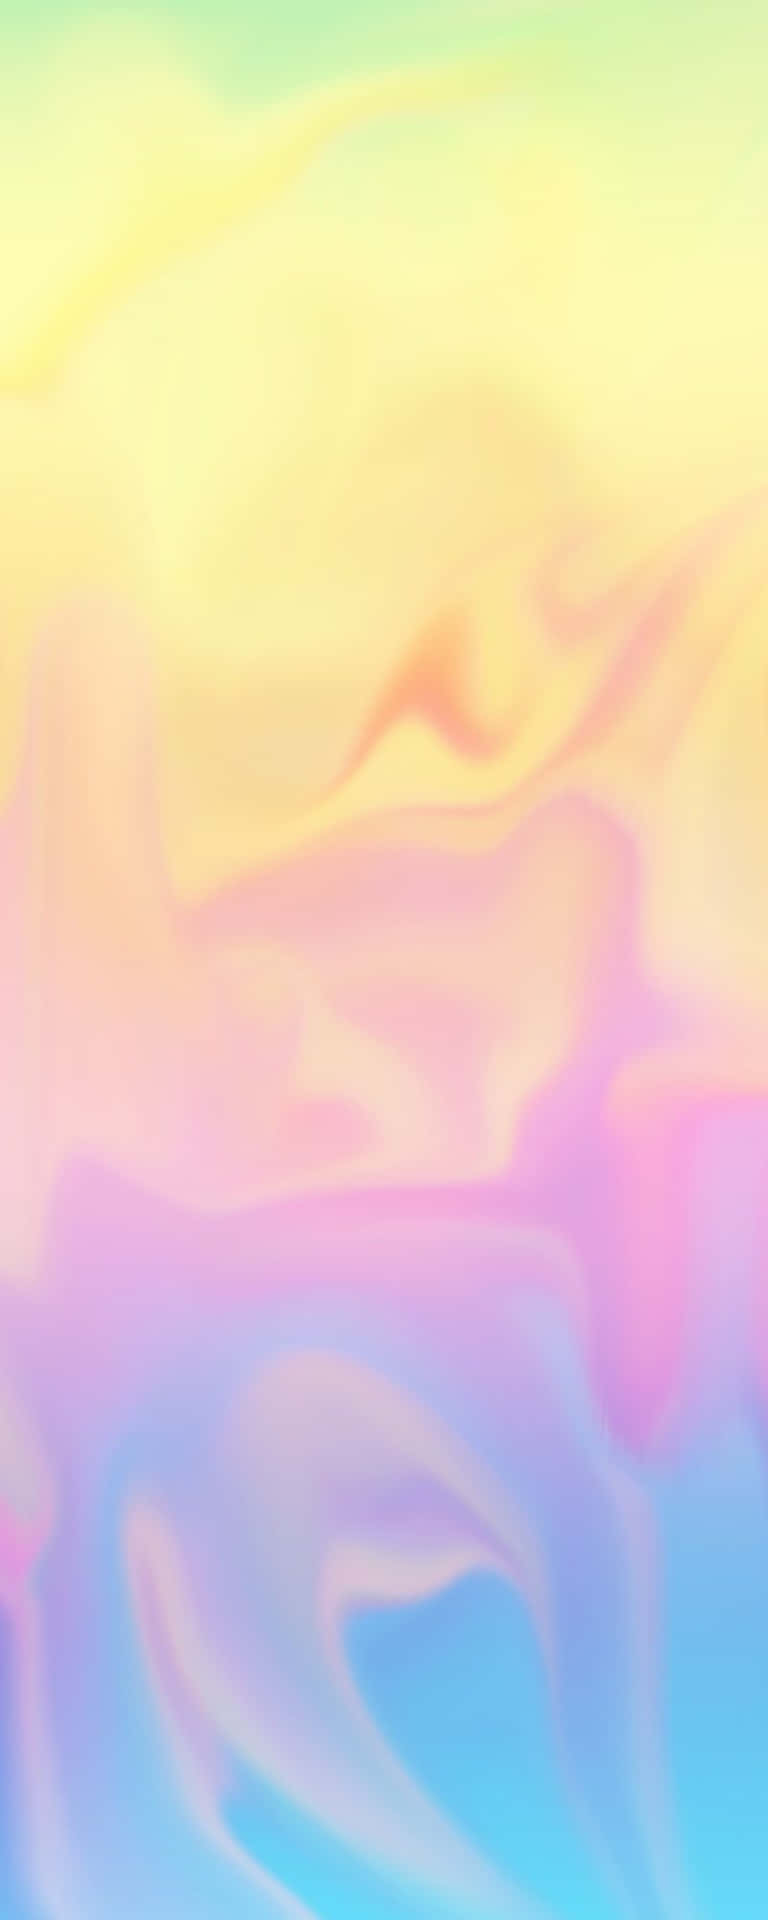 Enmjuk Pastellrosa Och Gul Gradient, Som Representerar Skönheten I Naturen. Wallpaper